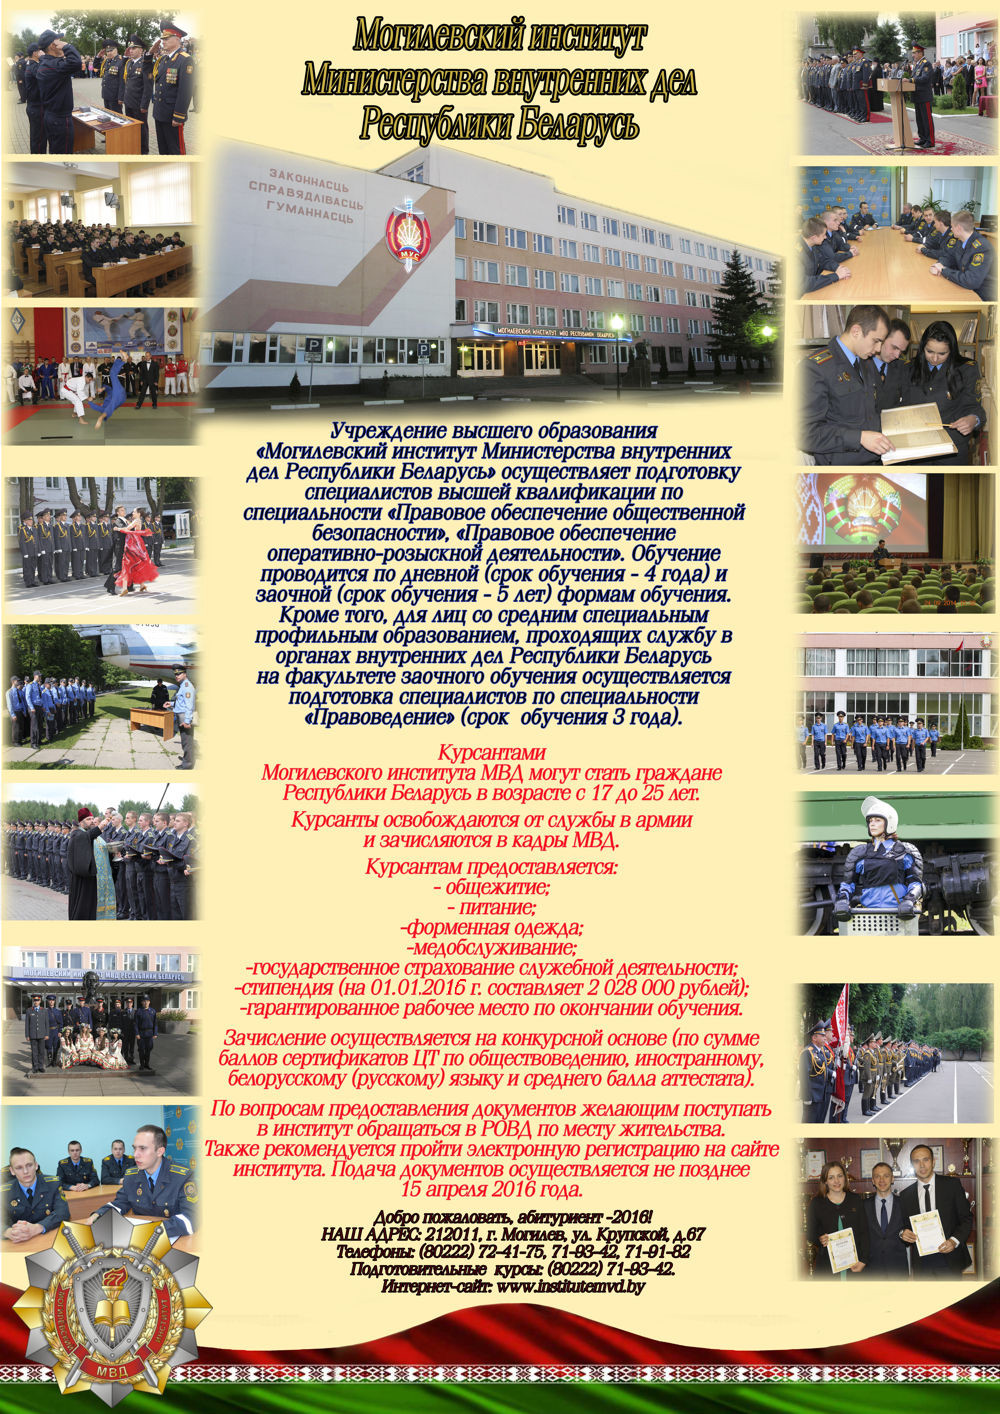 УВД Бобруйского горисполкома проводится набор абитуриентов в учреждение образования «Академия МВД Республики Беларусь».